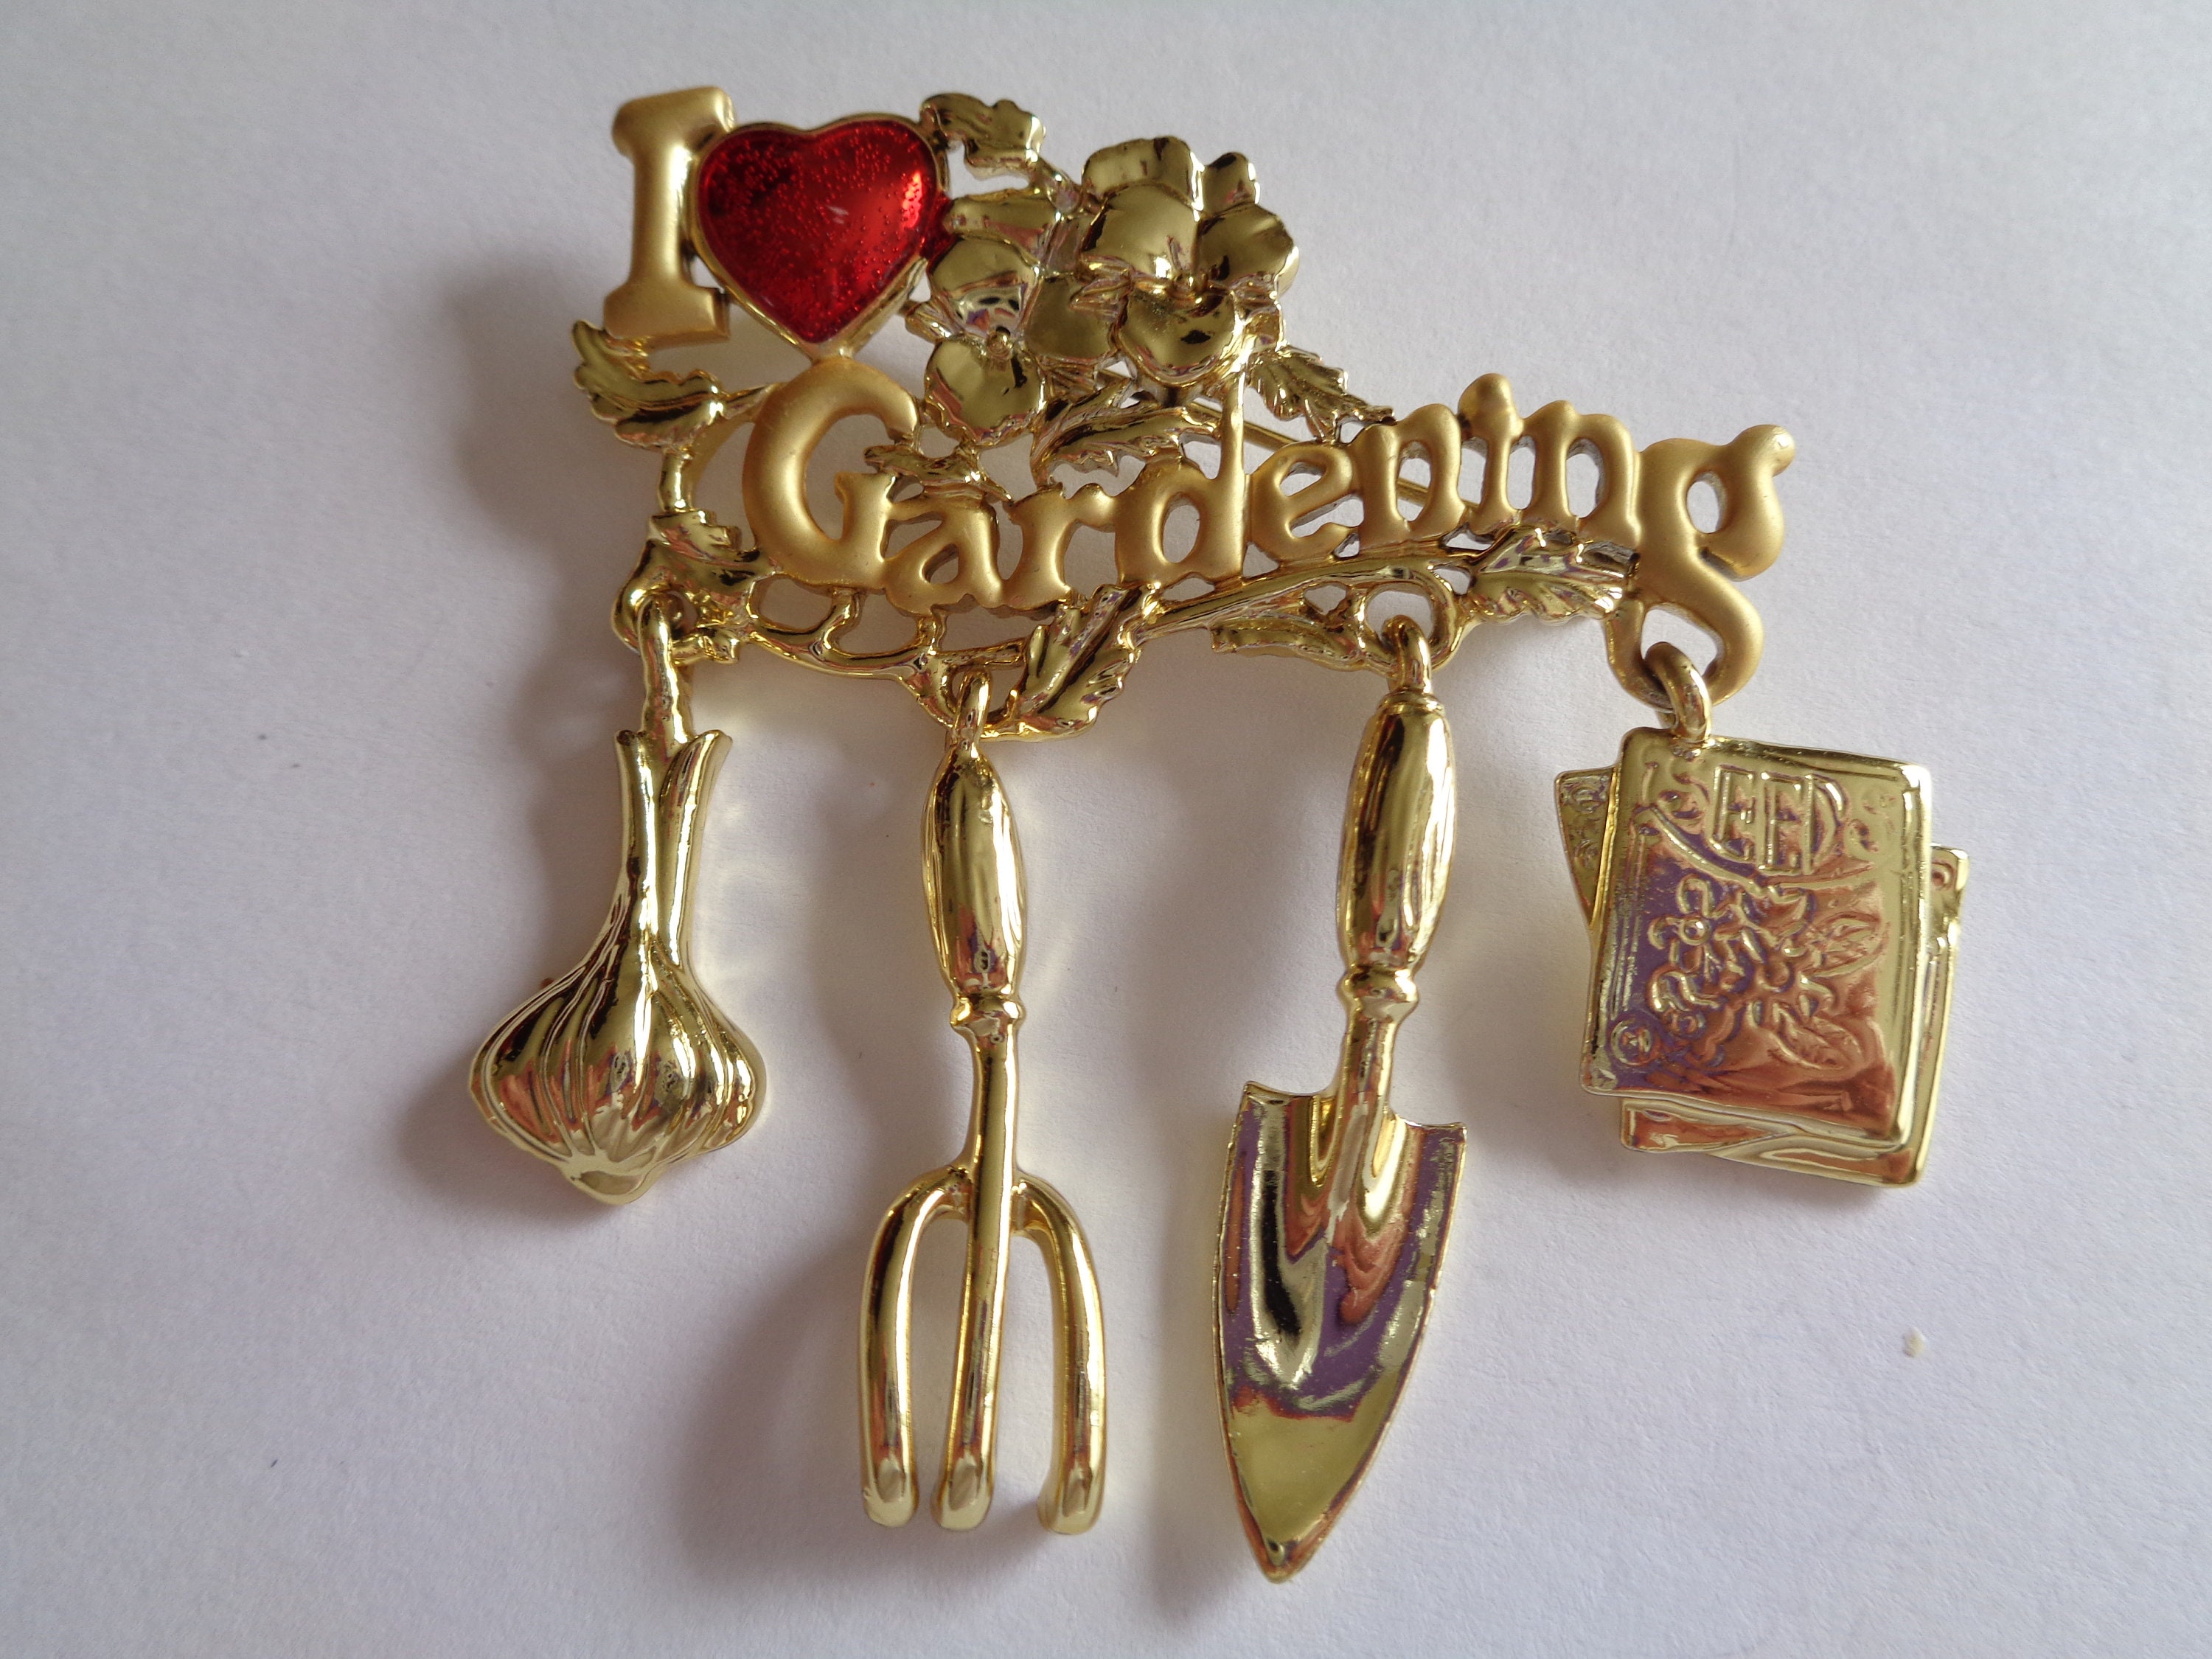 Danecraft vintage gold tone Gardening rake supply pin 